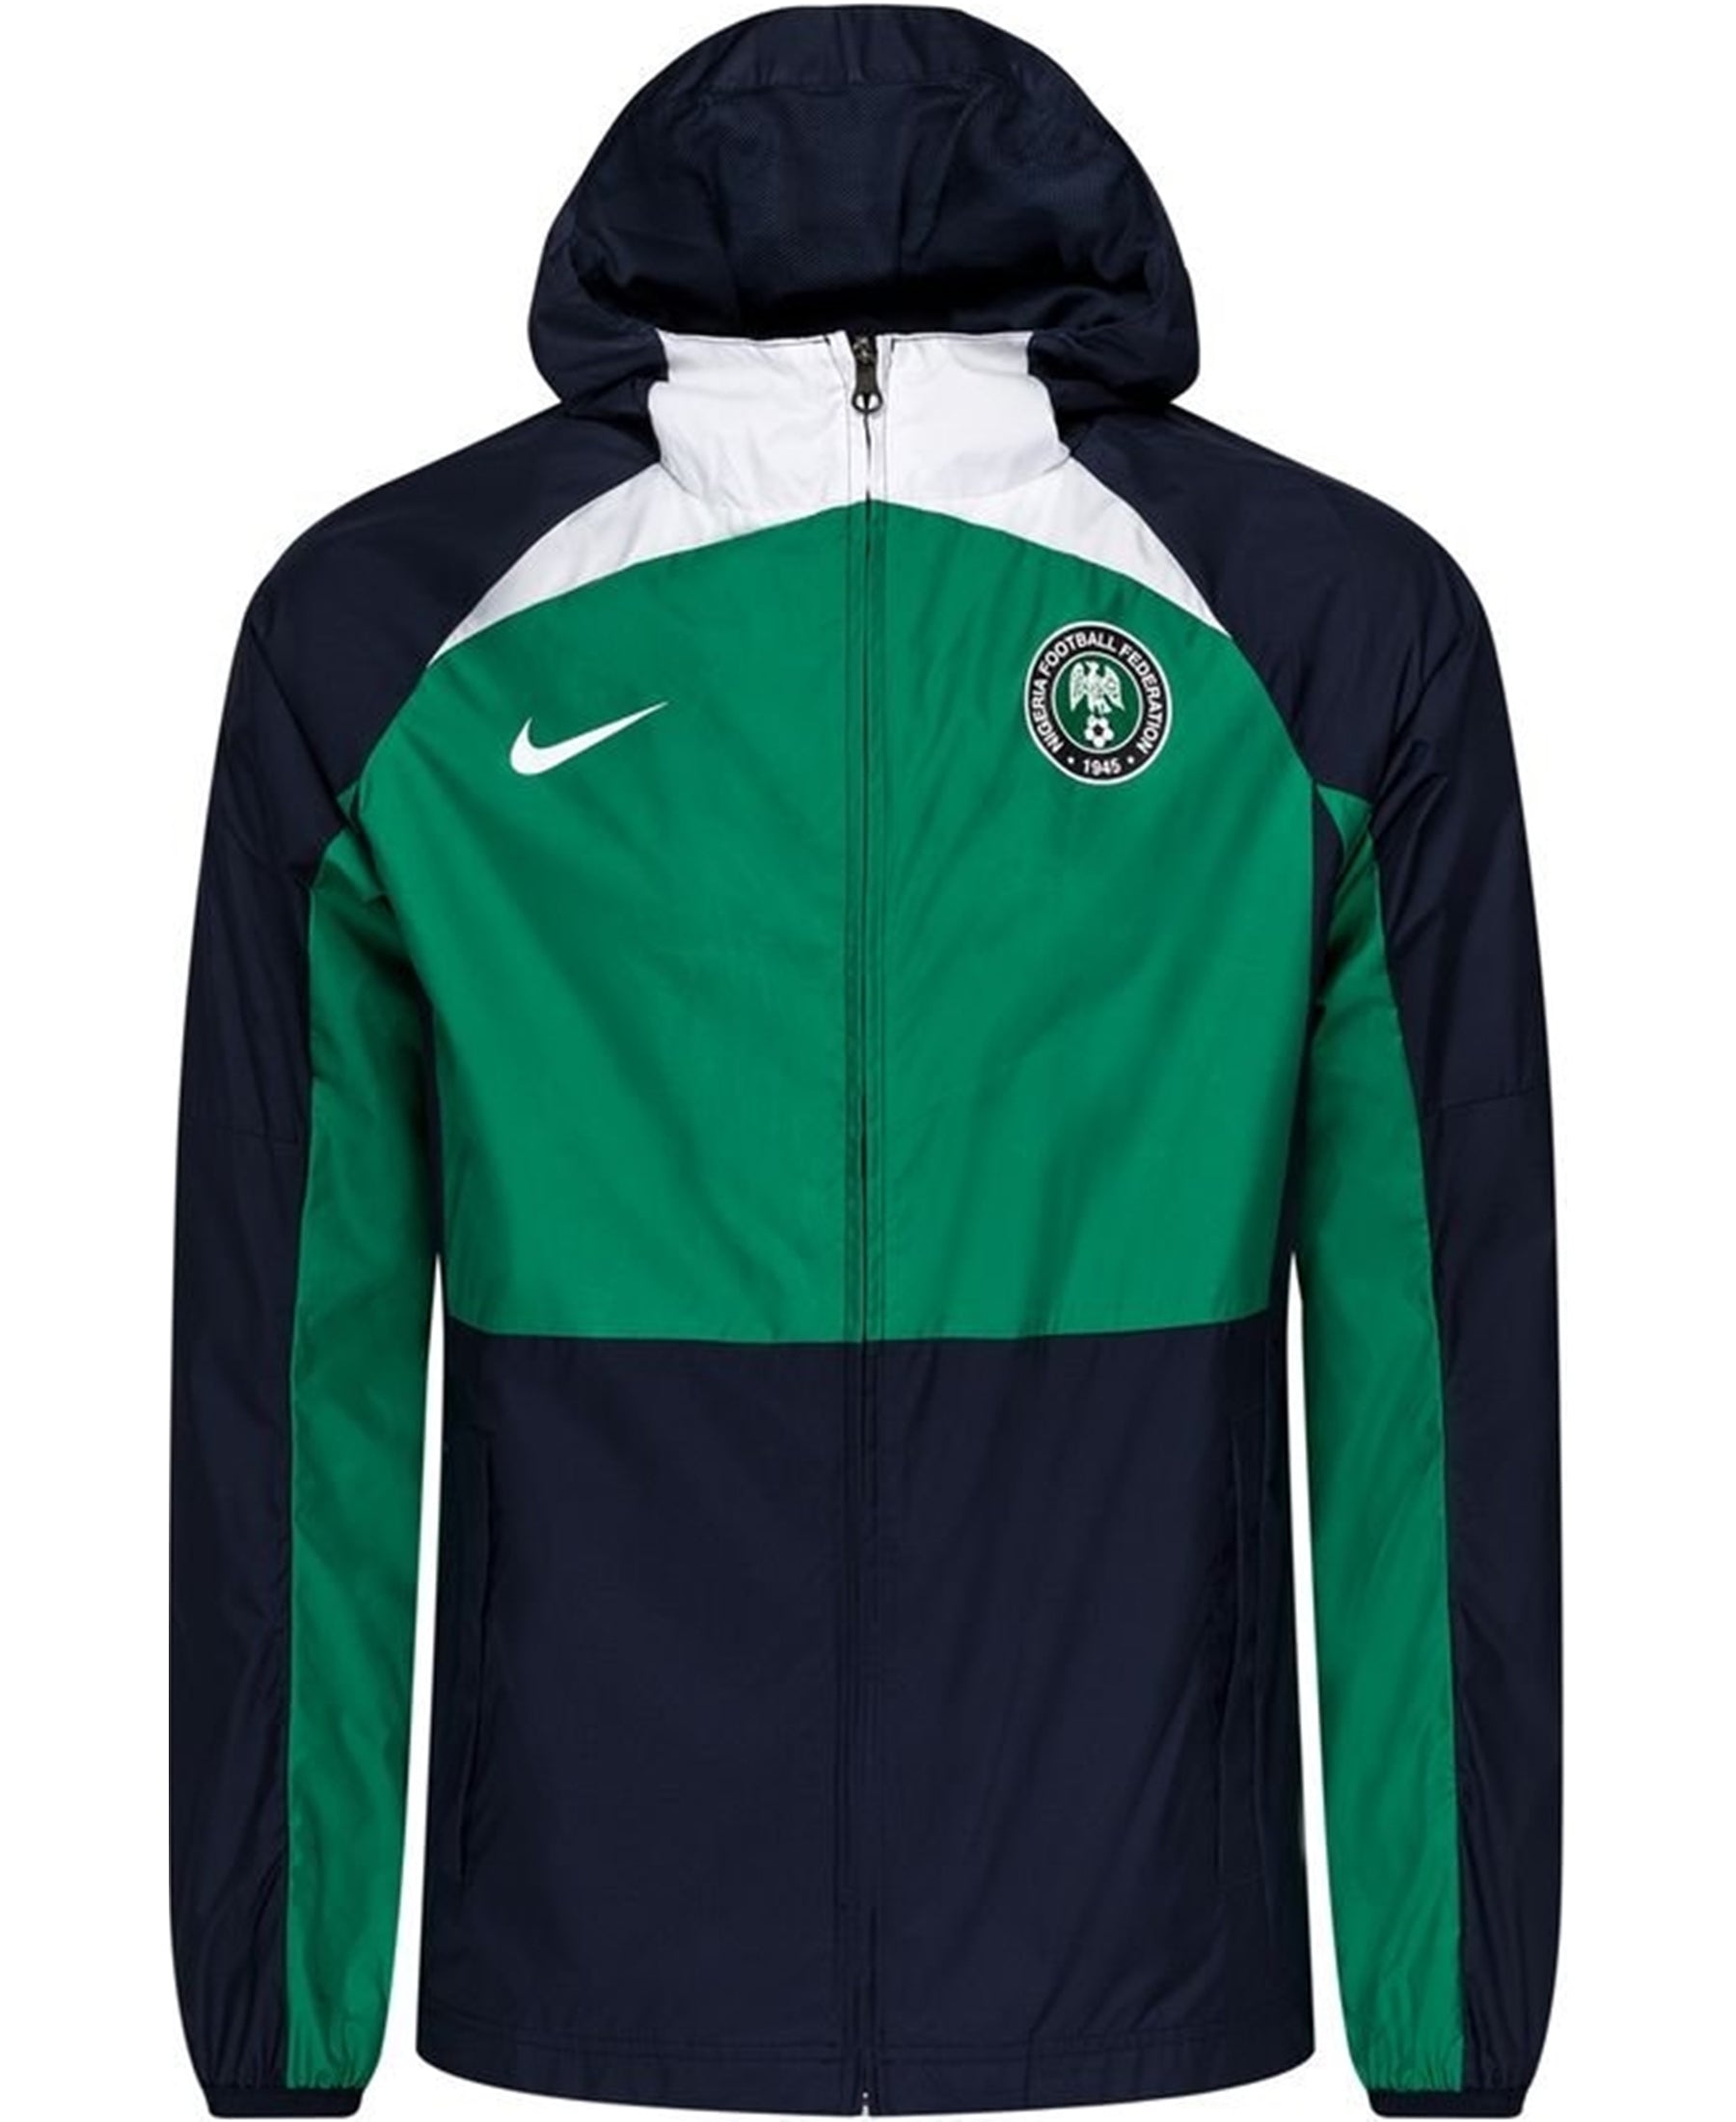 Die Nike Nigeria NFF Repel Academy AWF Jacke (DN1082-302) - Ein Must-have für Fans und Sportler. Mit ihrem auffälligen Design und hochwertigen Materialien ist sie der perfekte Begleiter, um trocken zu bleiben. Hol dir diese Jacke jetzt bei SHOP4TEAMSPORT und zeige deine Unterstützung für Nigeria, sei es auf oder neben dem Spielfeld. Mach dich bereit für die Saison!